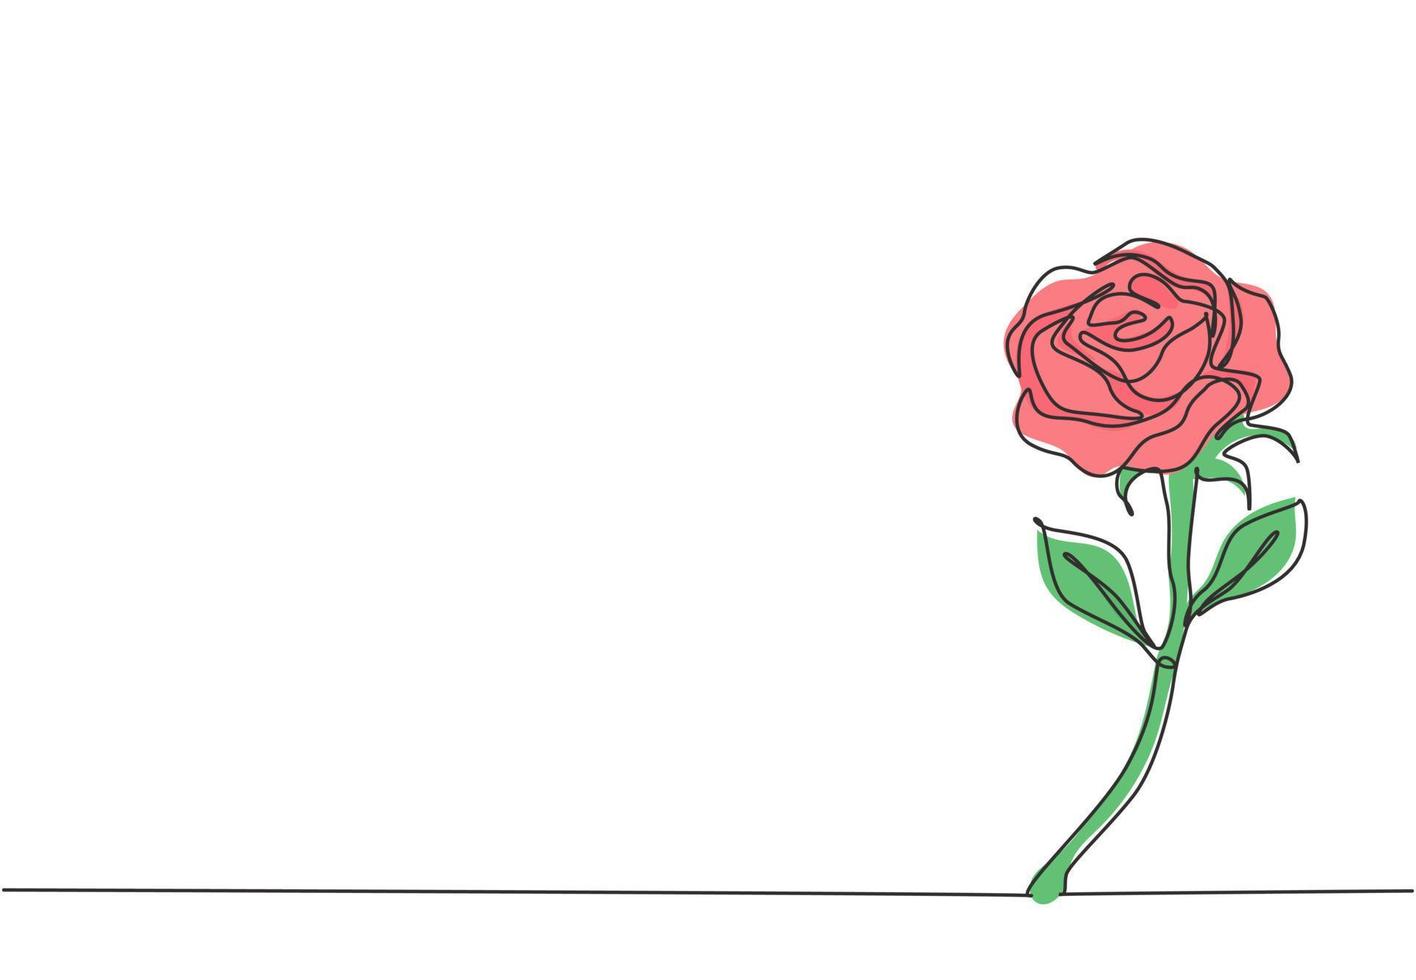 um único desenho de linha de linda flor rosa romântica fresca. cartão, convite, logotipo, banner, conceito de cartaz. gráfico de ilustração vetorial de desenho de linha contínua dinâmica vetor